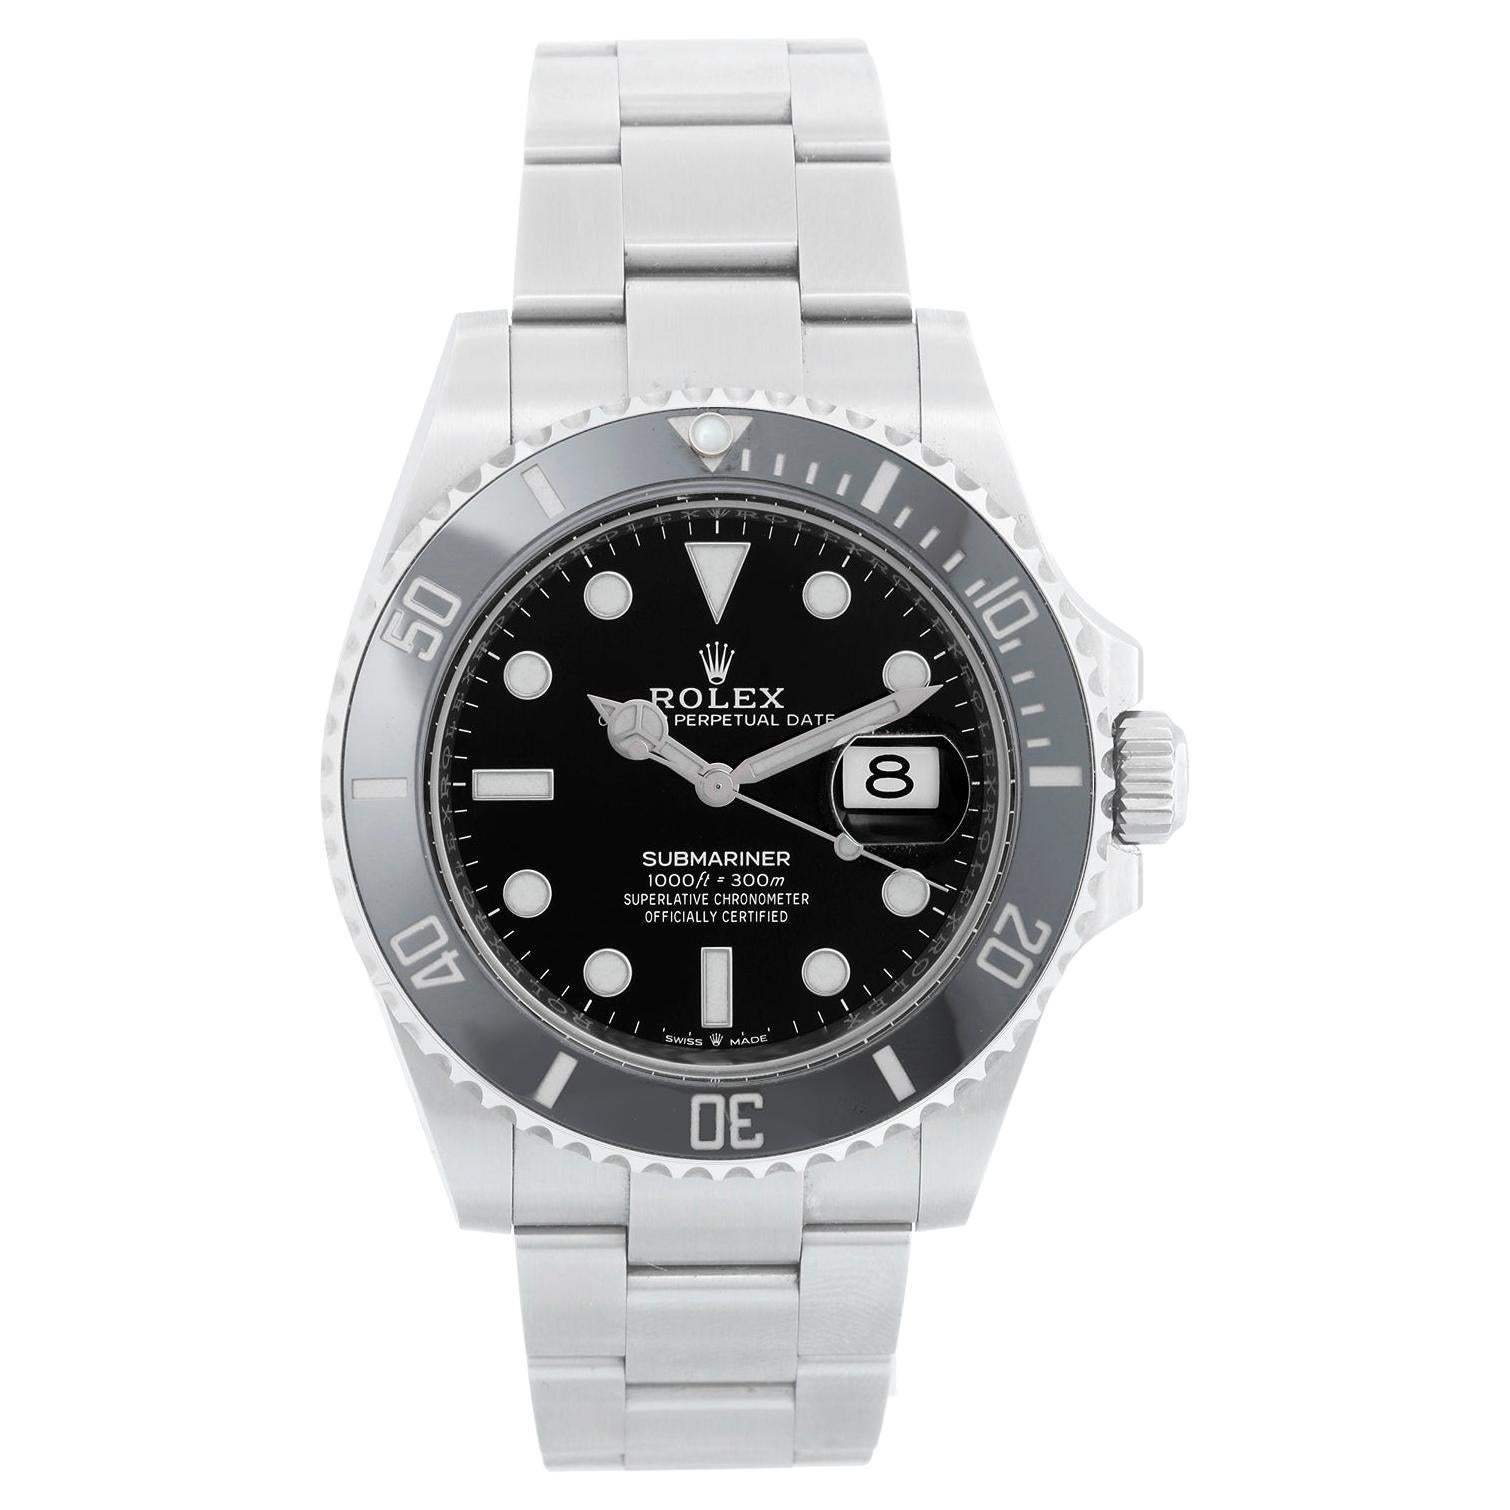 Rolex Submariner Date Men's Stainless Steel Watch 126610LN